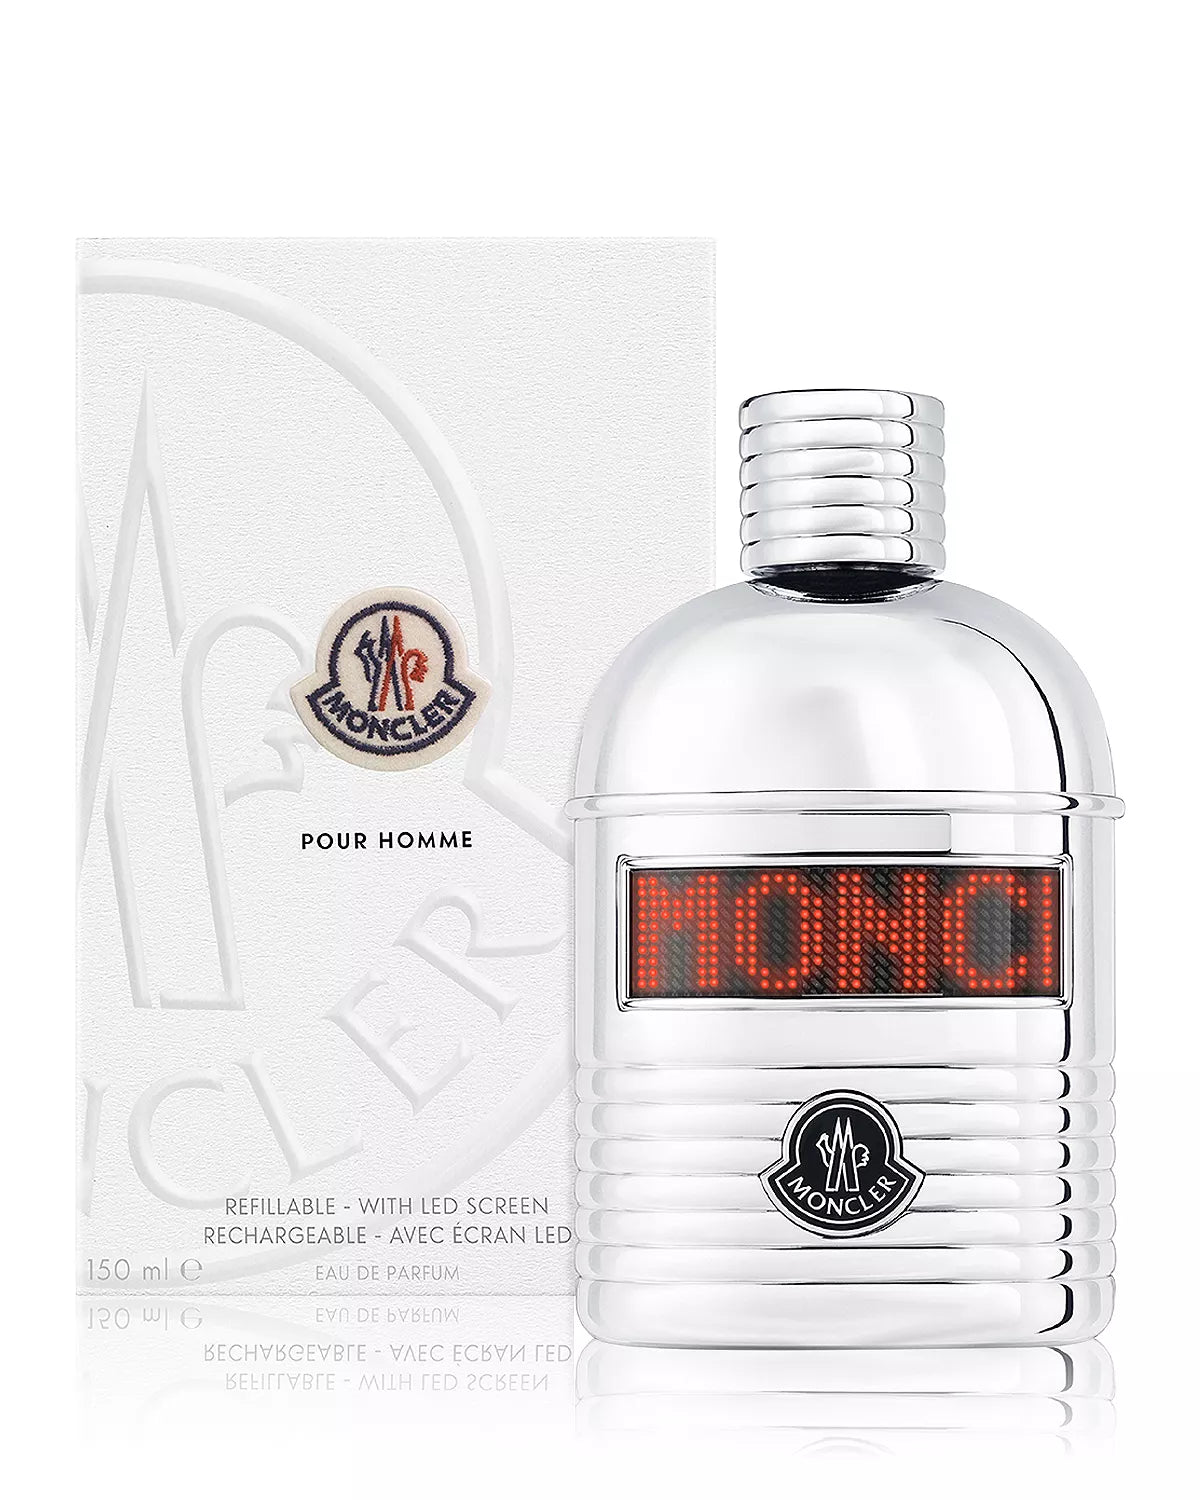 Moncler Pour Homme Eau de Parfum, 5 oz 150 ml